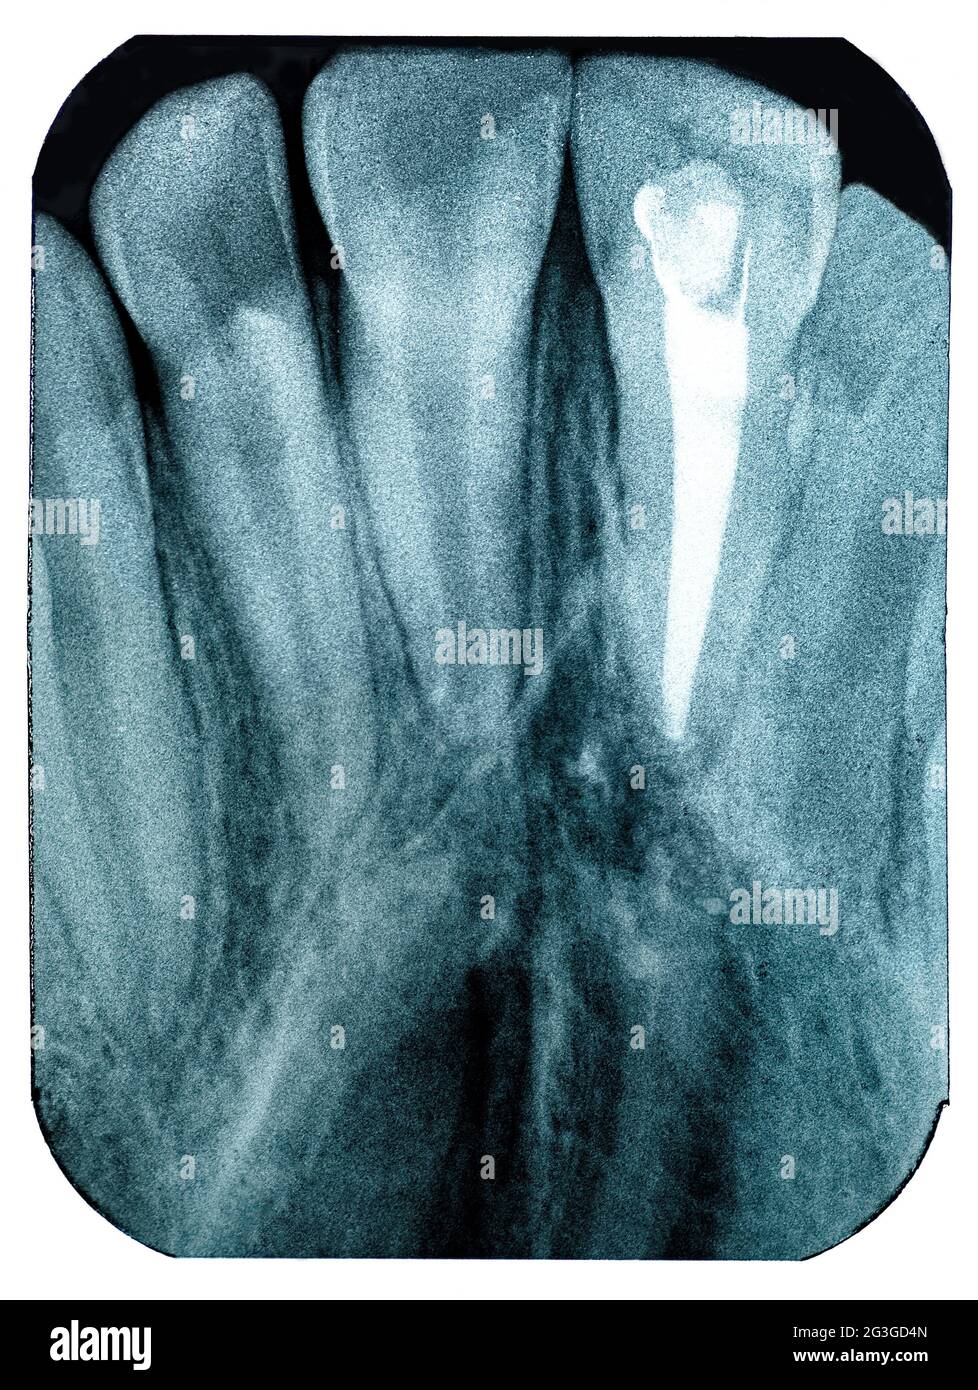 Radiographie Bildgebung Zähne oberen Eckzähne Wurzelkanal Laborfilm Stockfoto